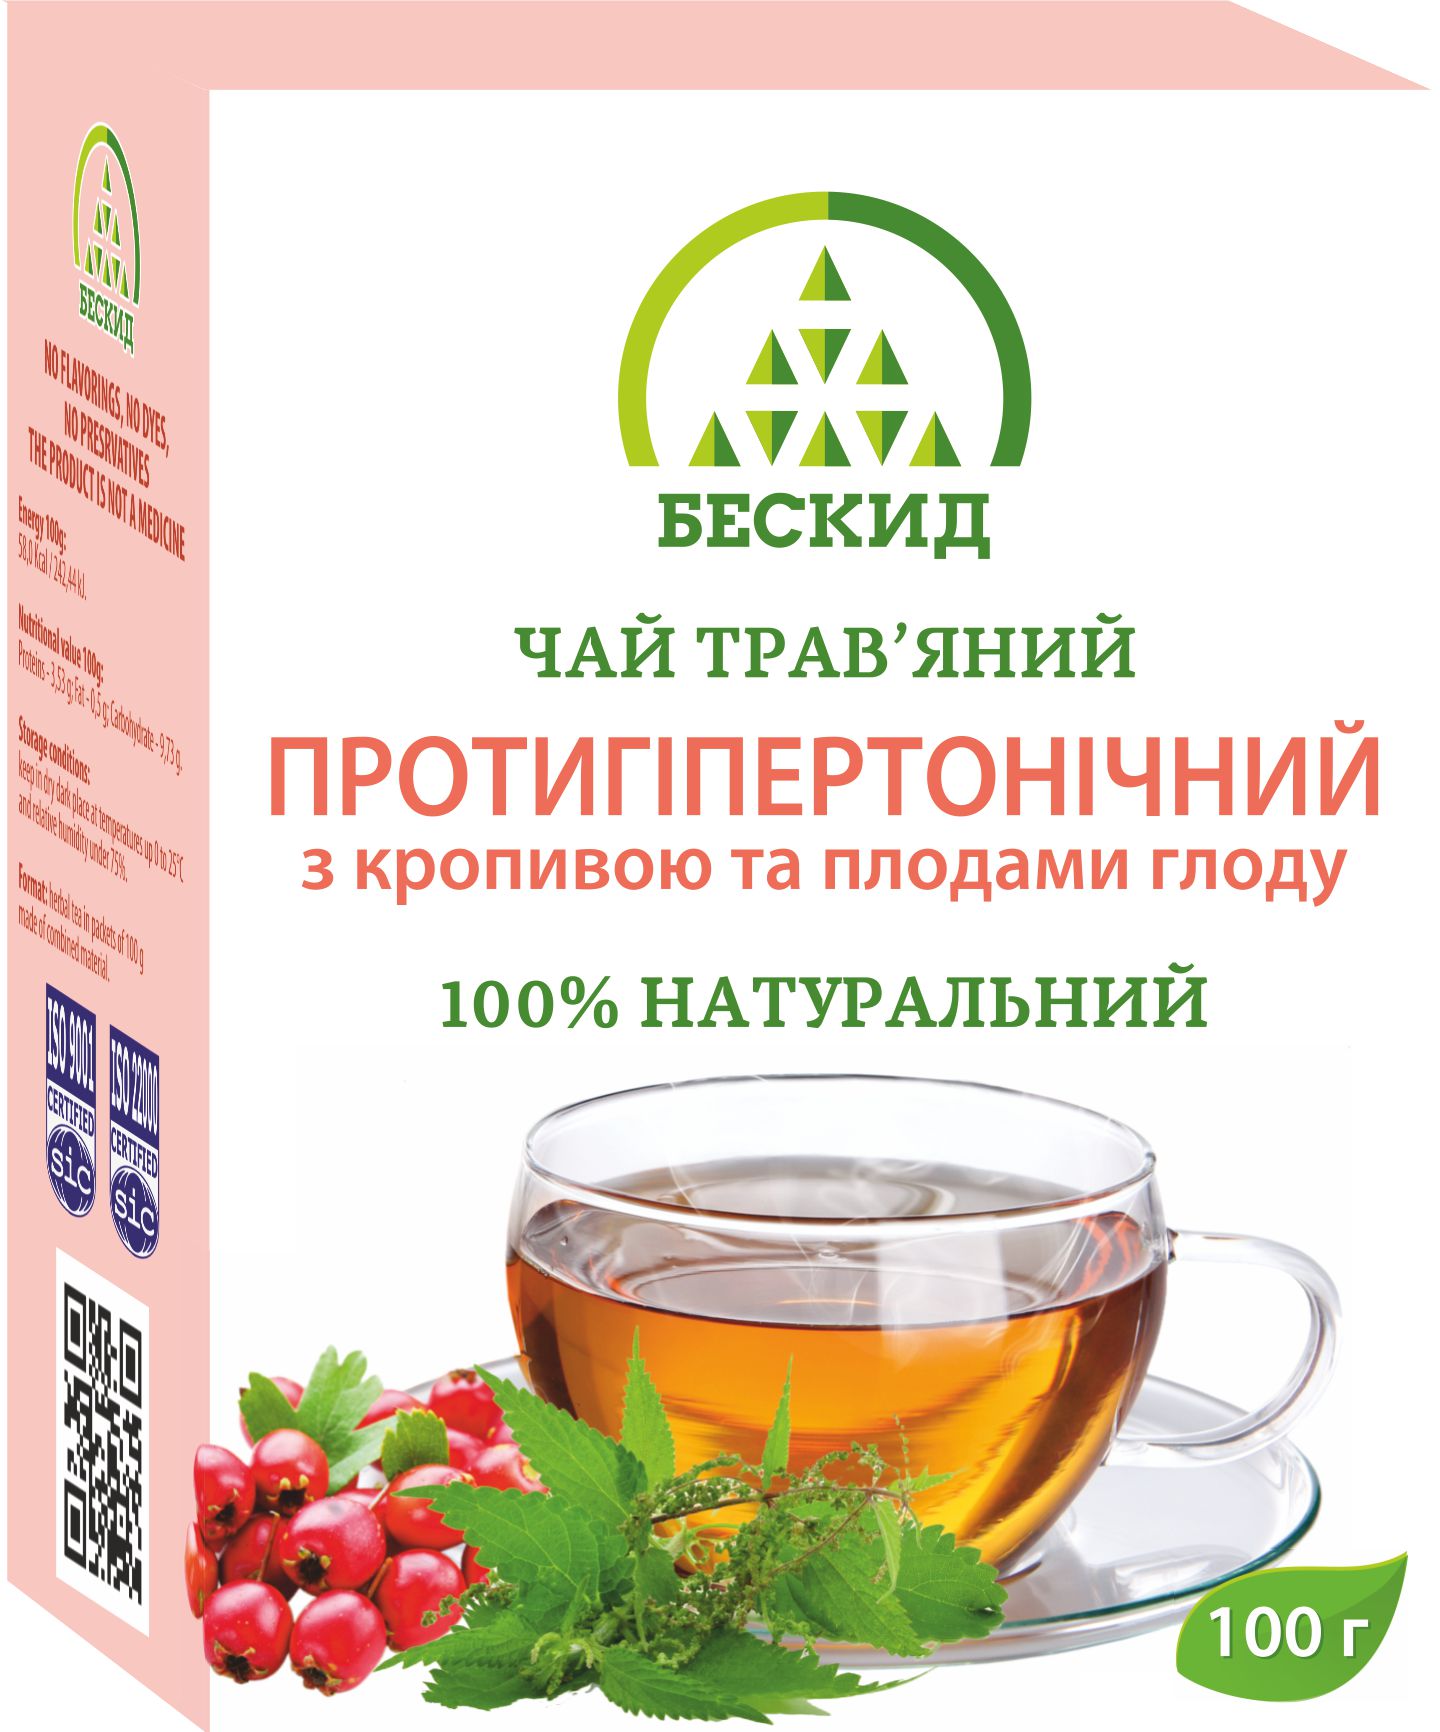 Чай травяной «Противогипертонический» с крапивой и плодами боярышника